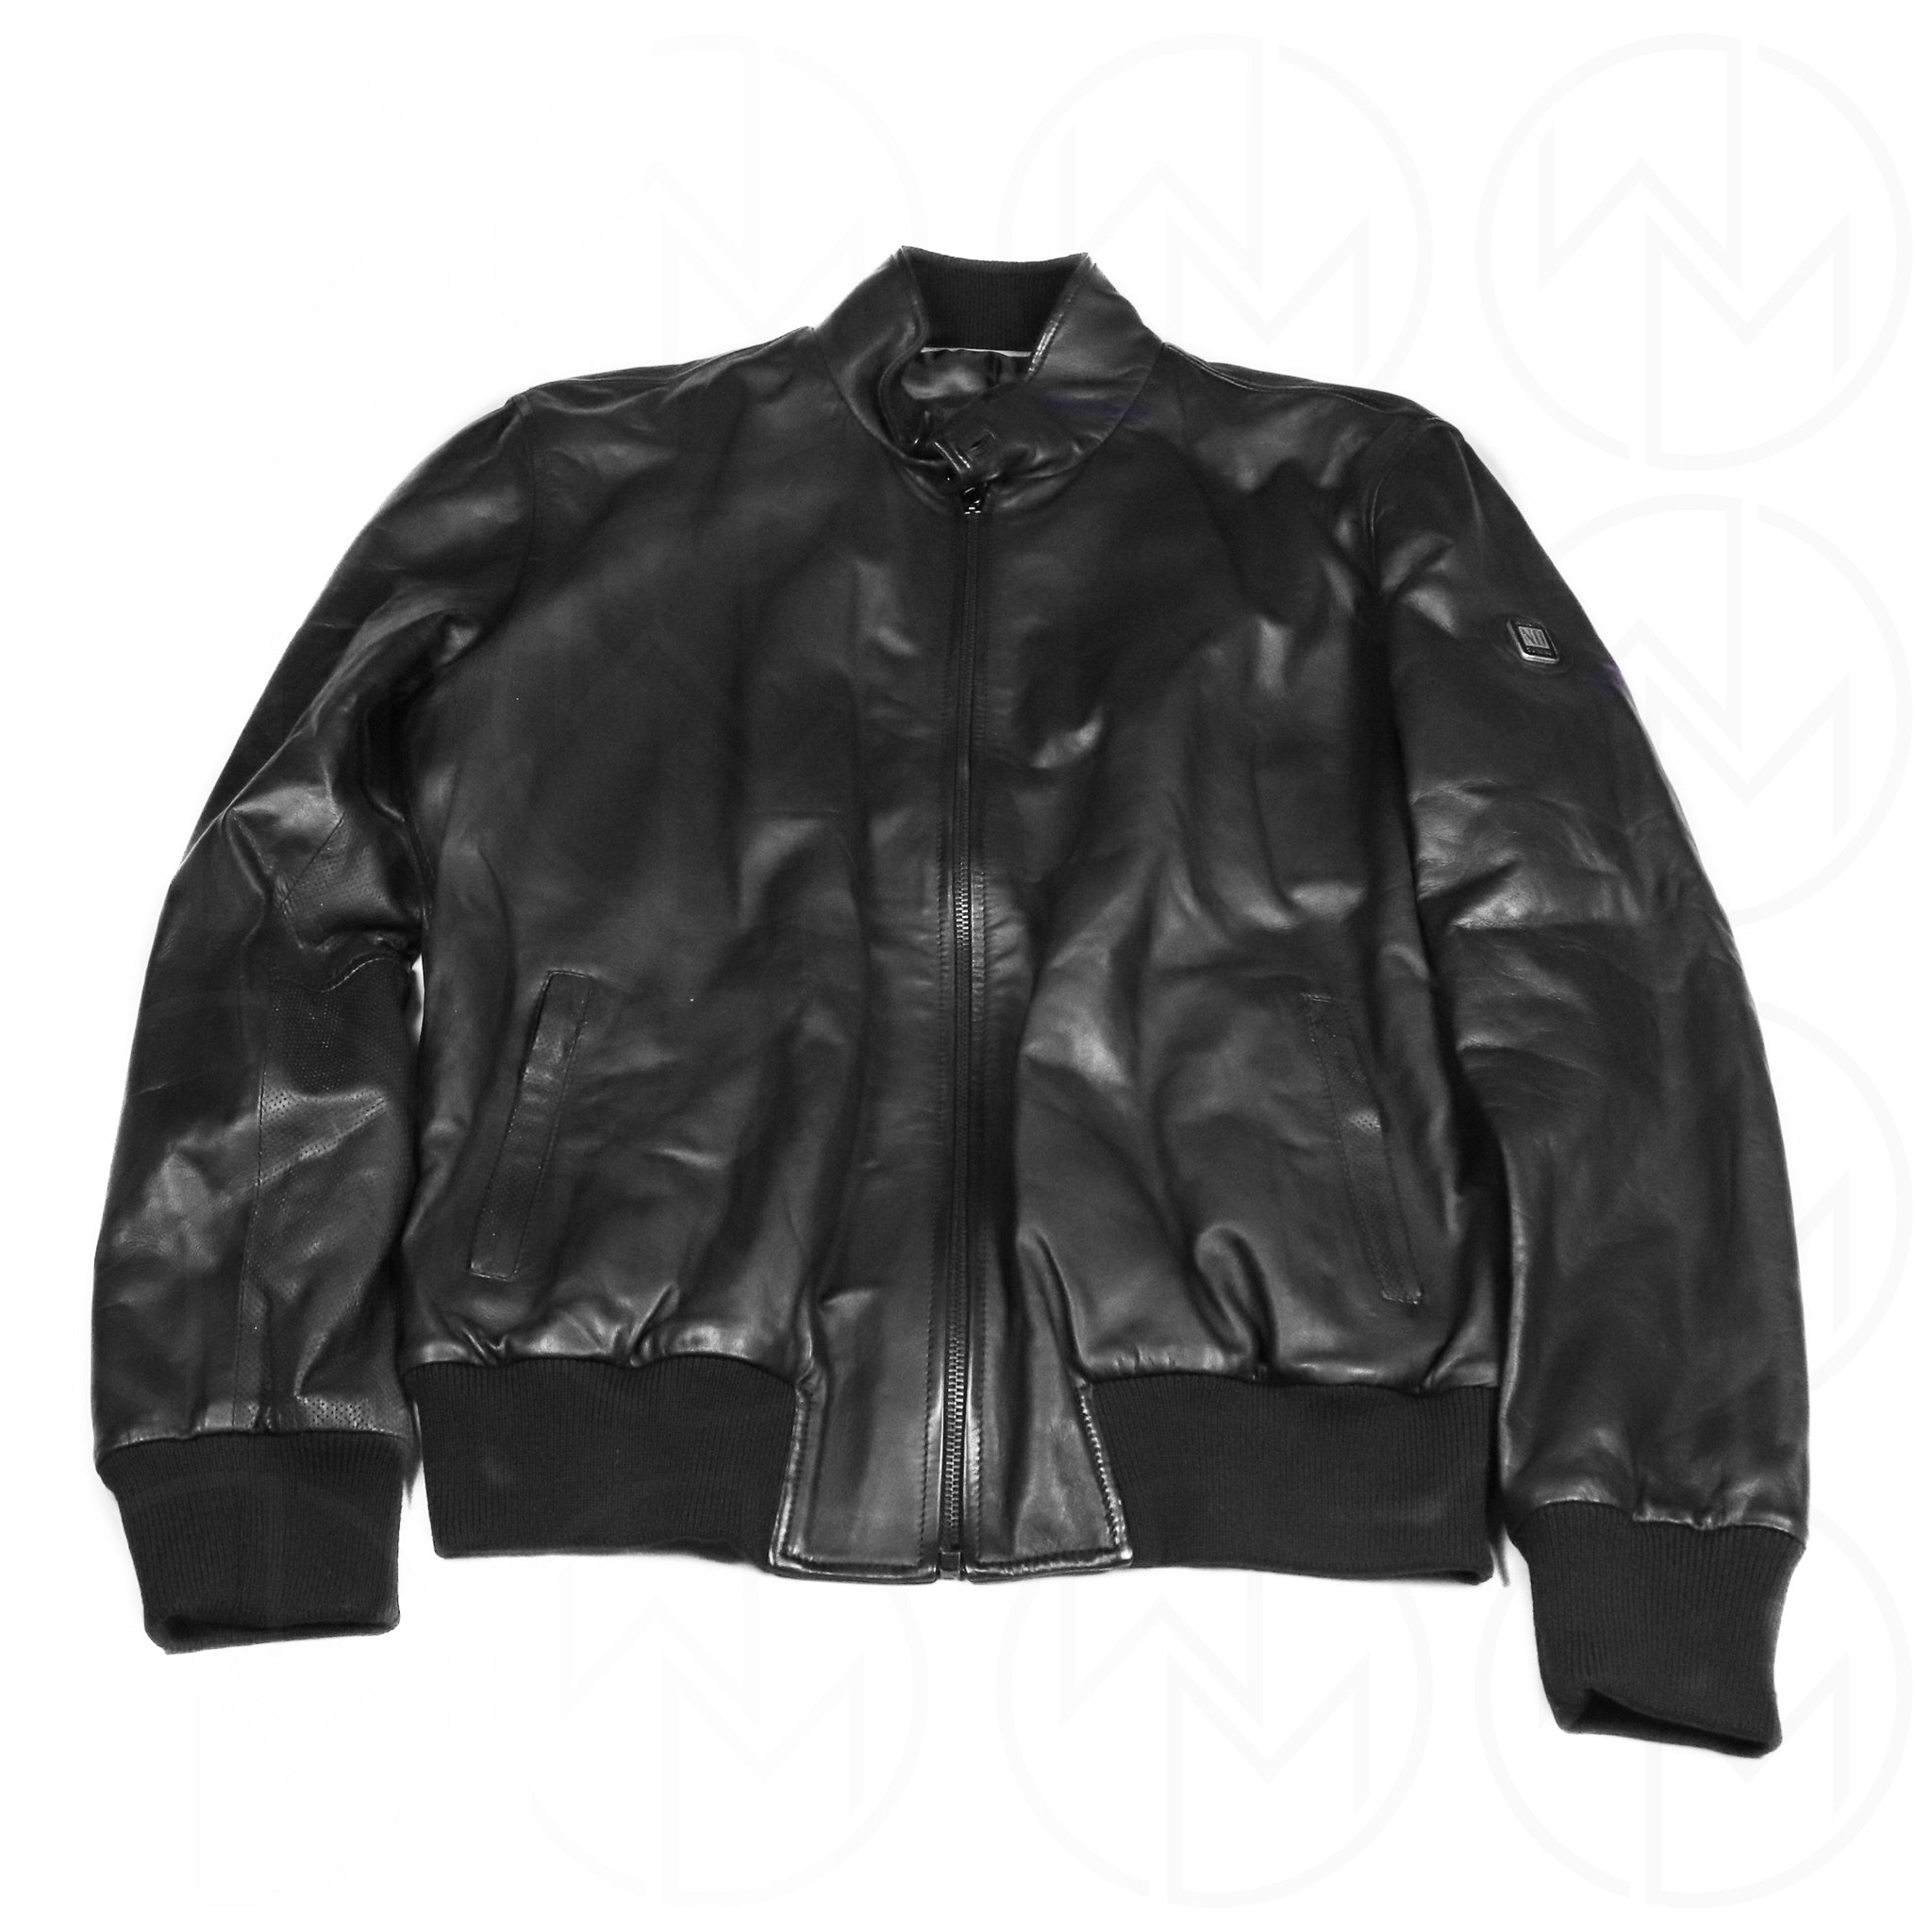 Nardi Leather Jacket - Size 56